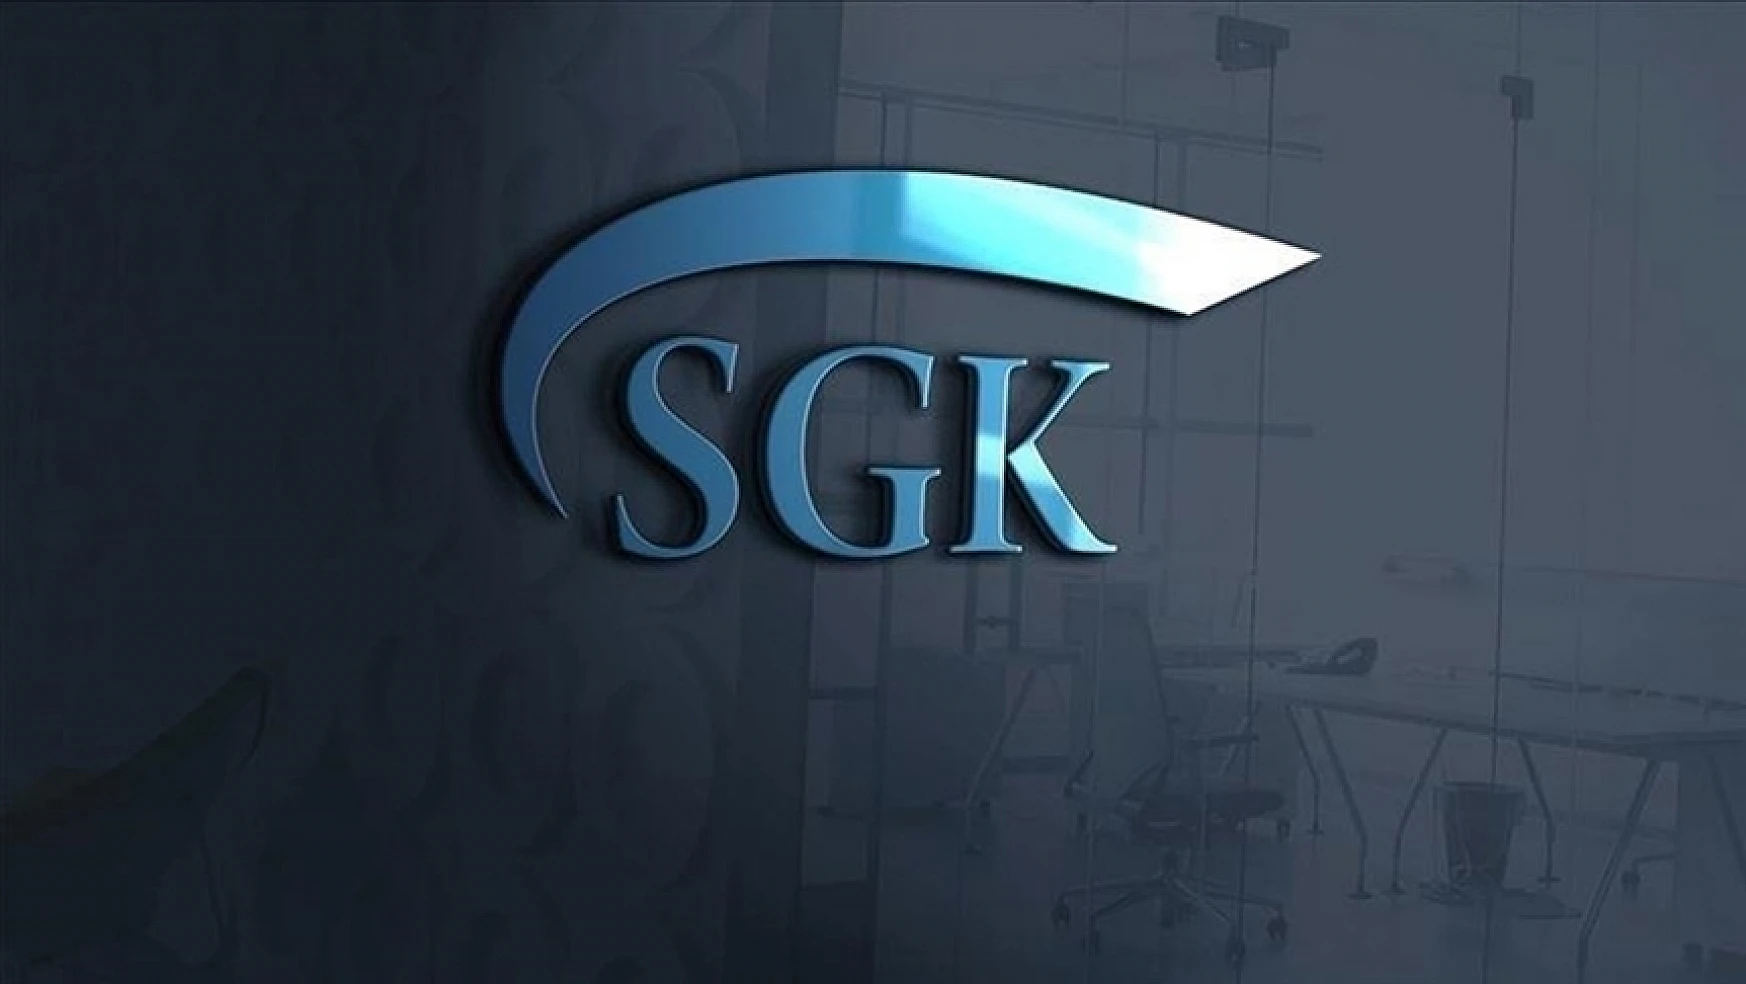 SGK kayıt dışı istihdamla mücadeleye hız verdi